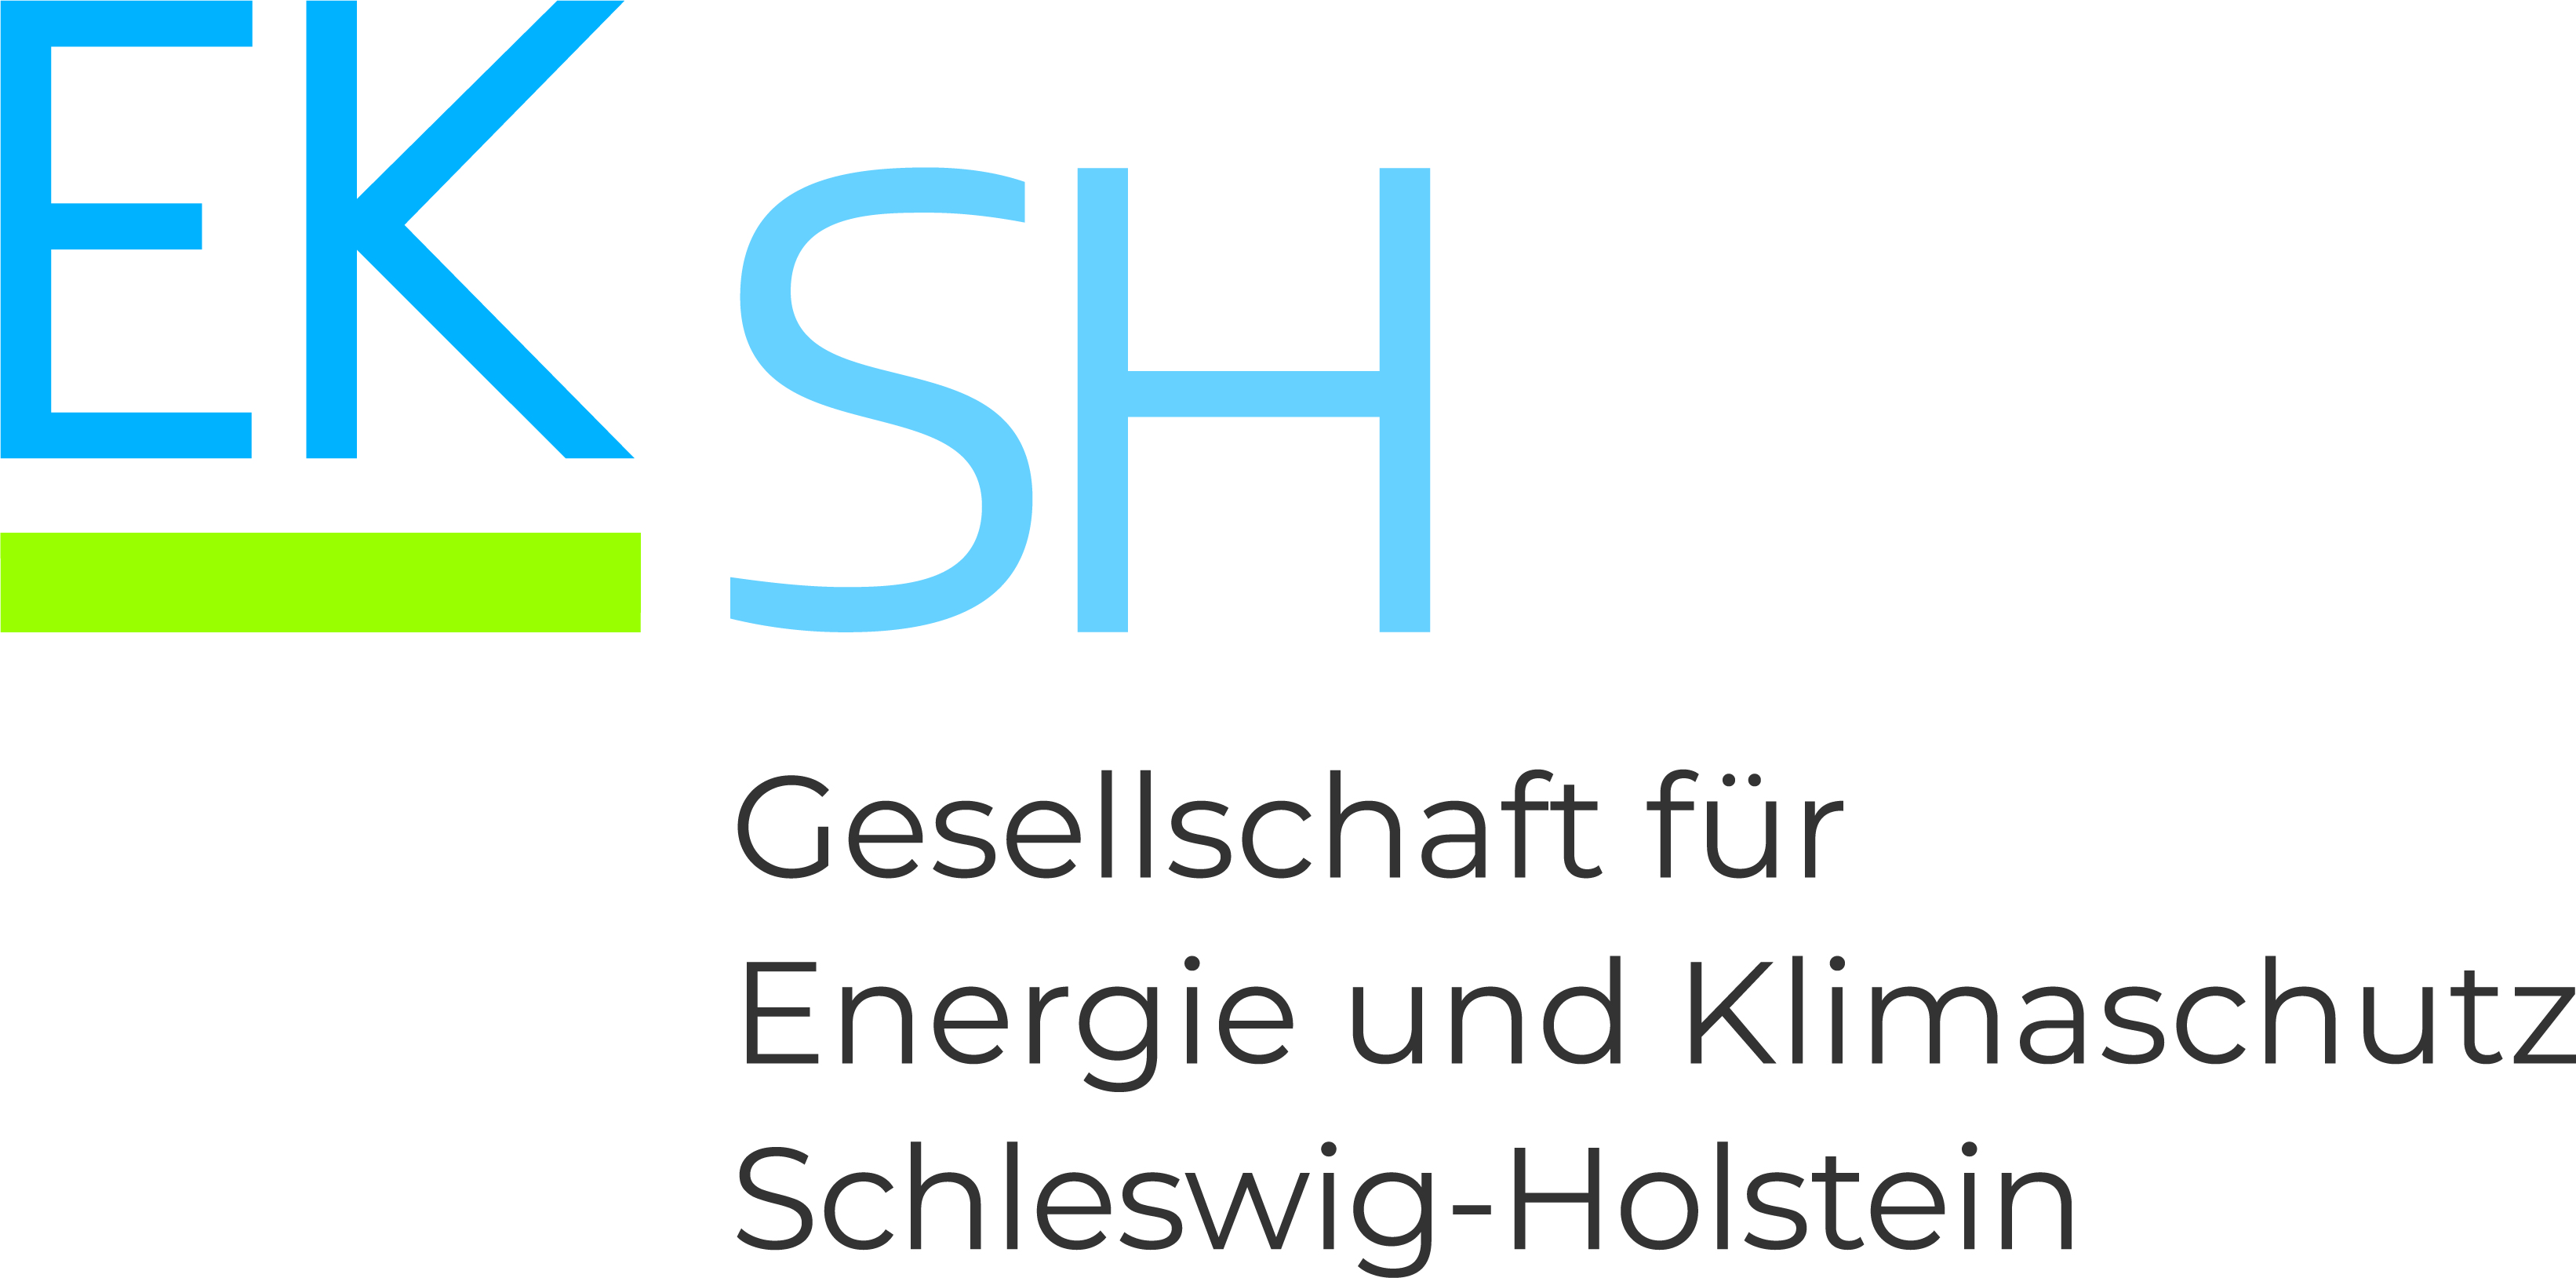 Gesellschaft für Energie und Klimaschutz Schleswig-Holstein